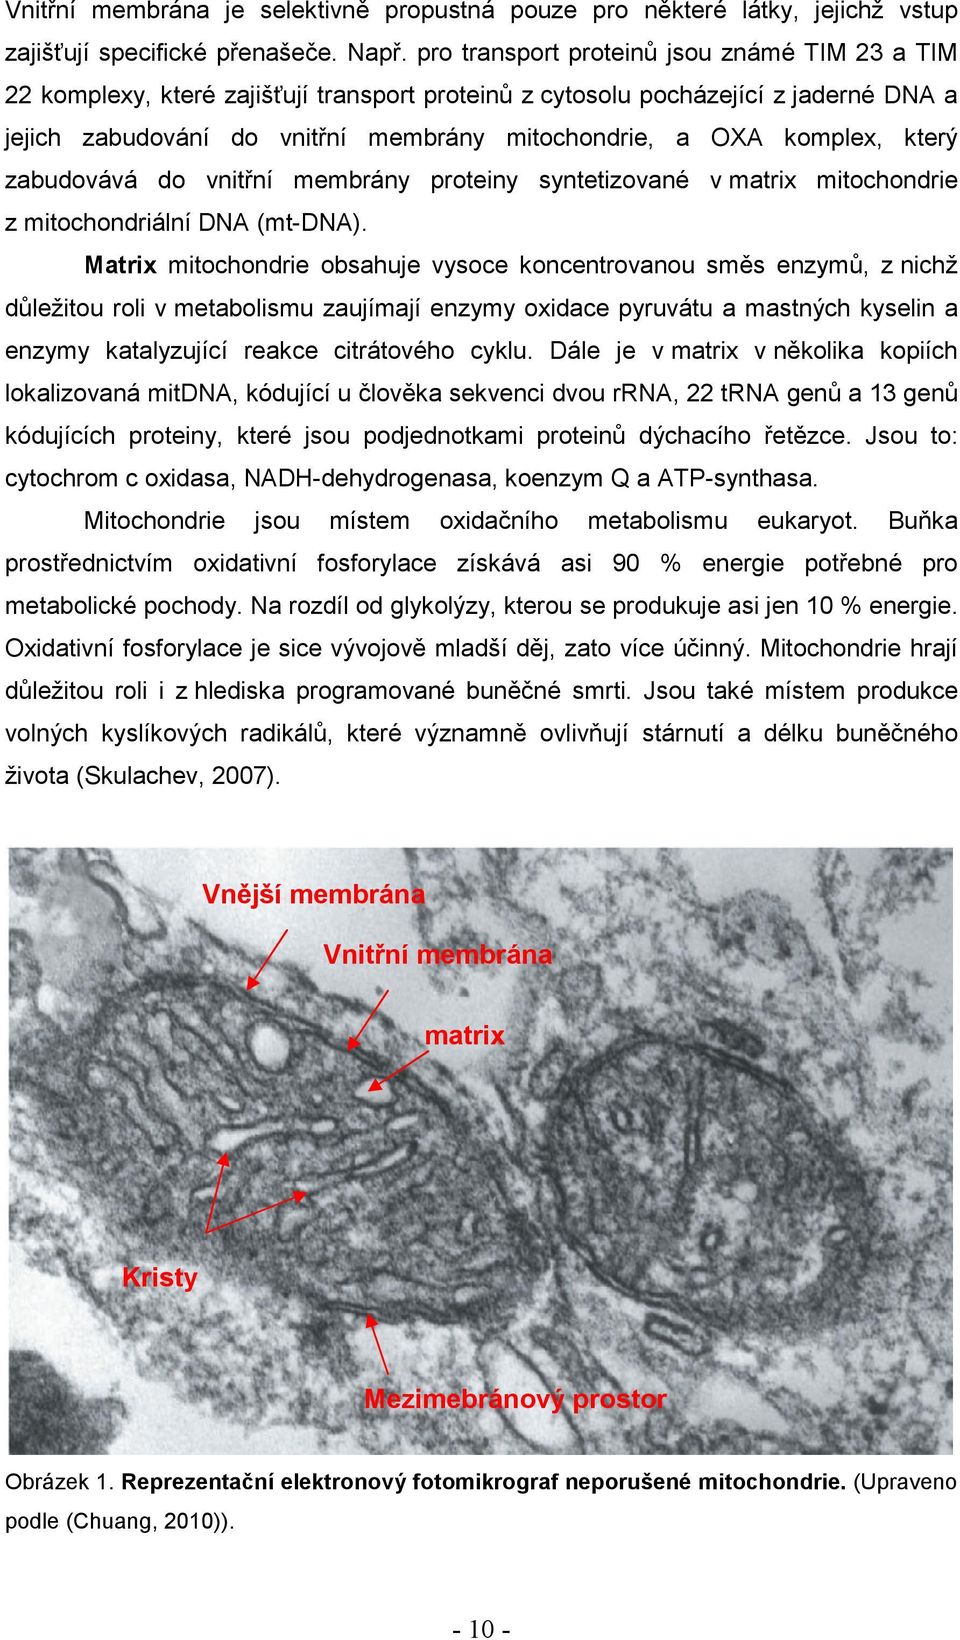 komplex, který zabudovává do vnitřní membrány proteiny syntetizované v matrix mitochondrie z mitochondriální DNA (mt-dna).